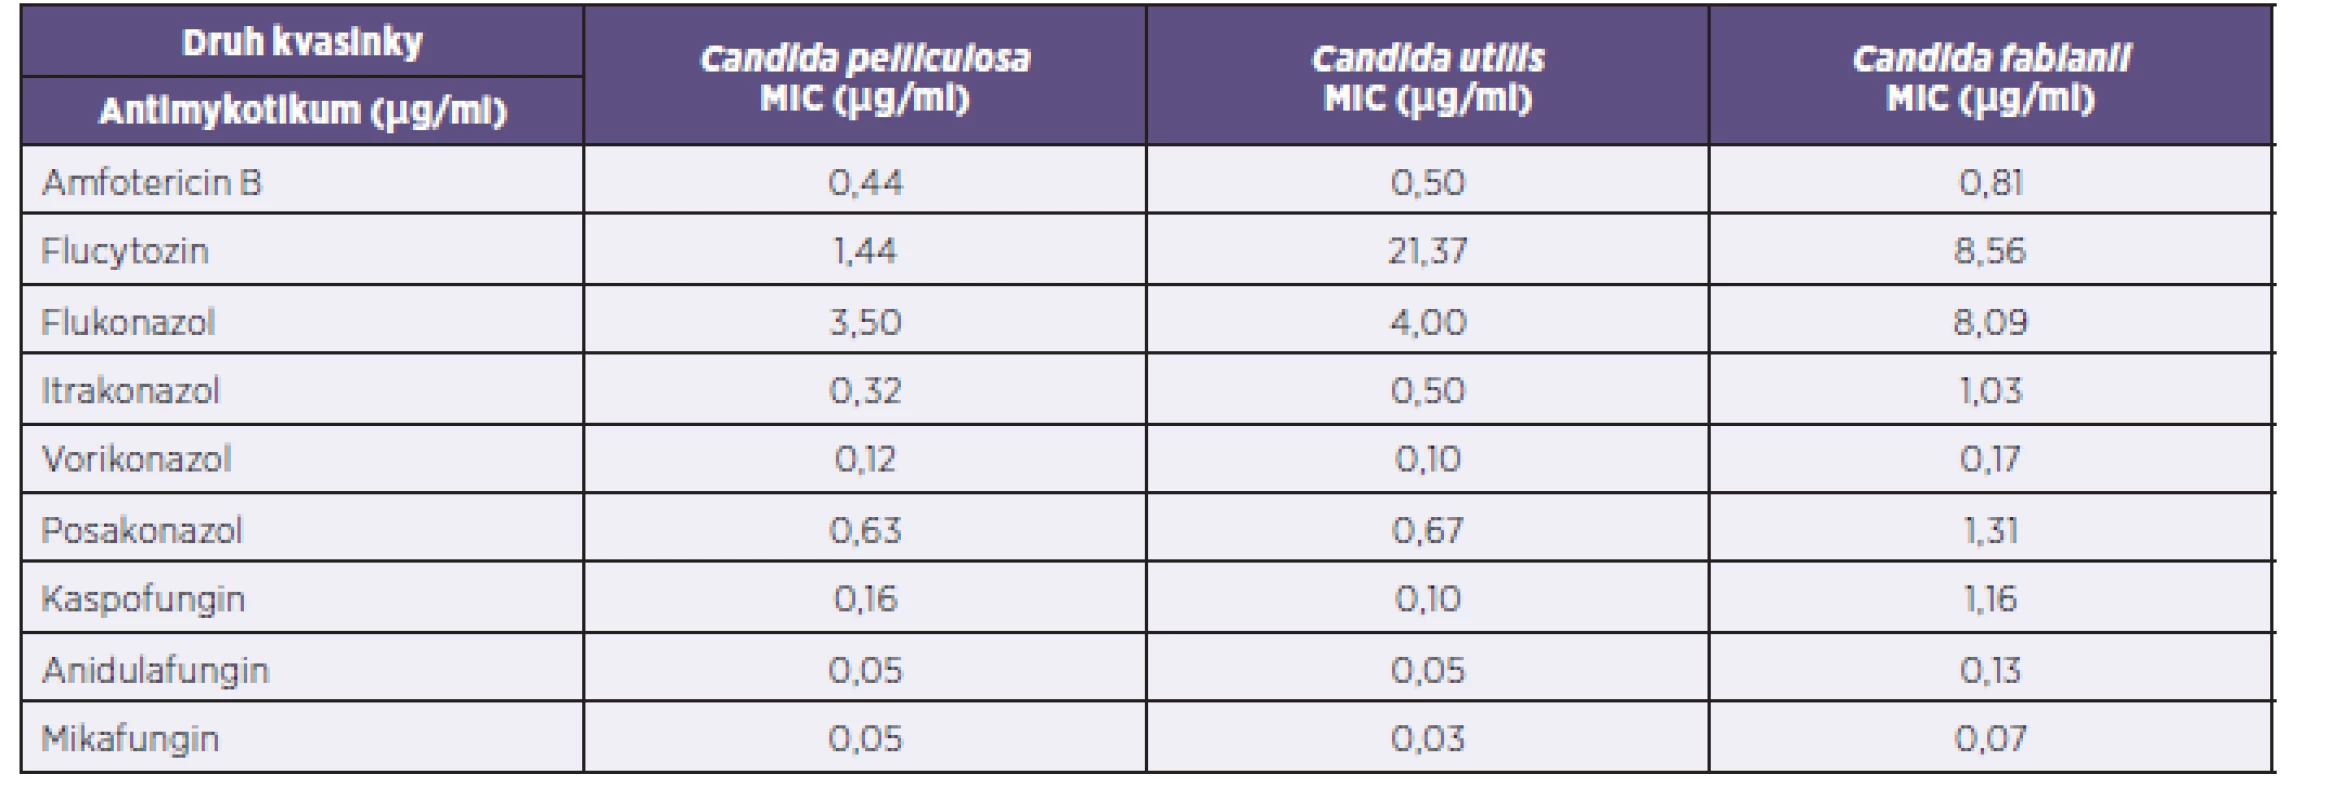 Mezidruhové porovnání průměrných MIC antimykotik
Table 1. Interspecies comparison of the mean MICs of antifungals